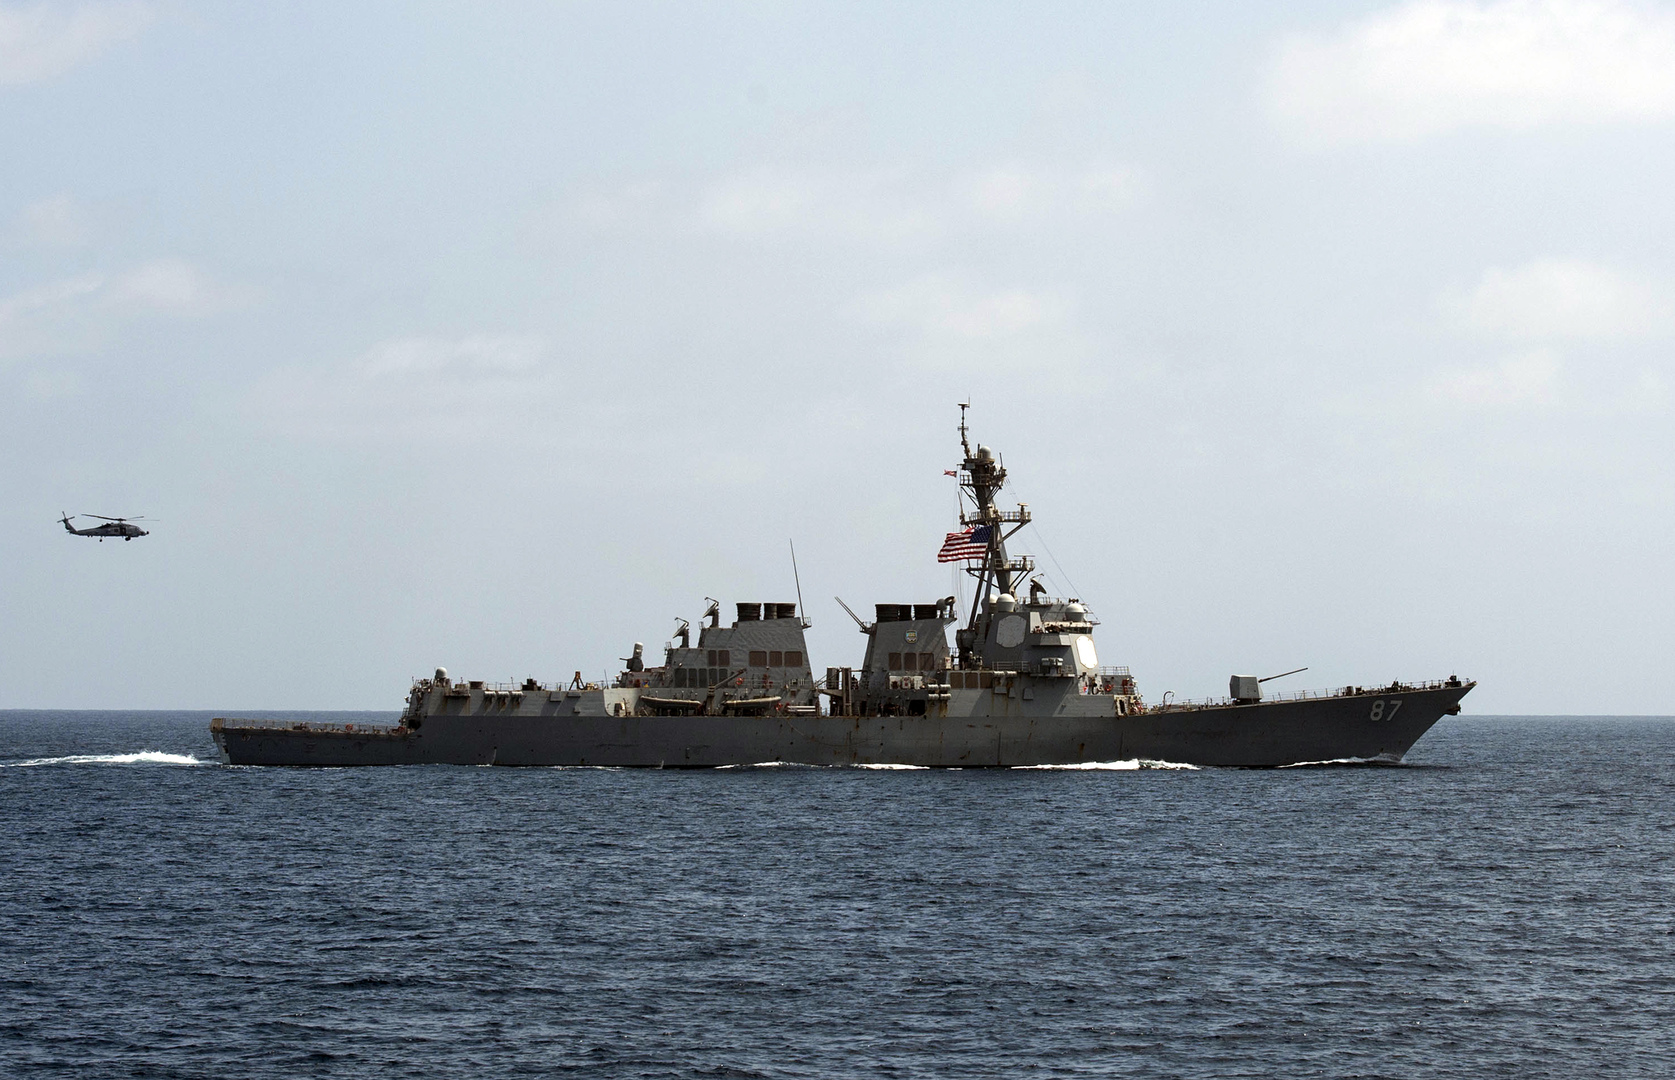 الجيش الأمريكي يعلن احتجازه سفينة قادمة من إيران محملة بمواد تستخدم في المتفجرات